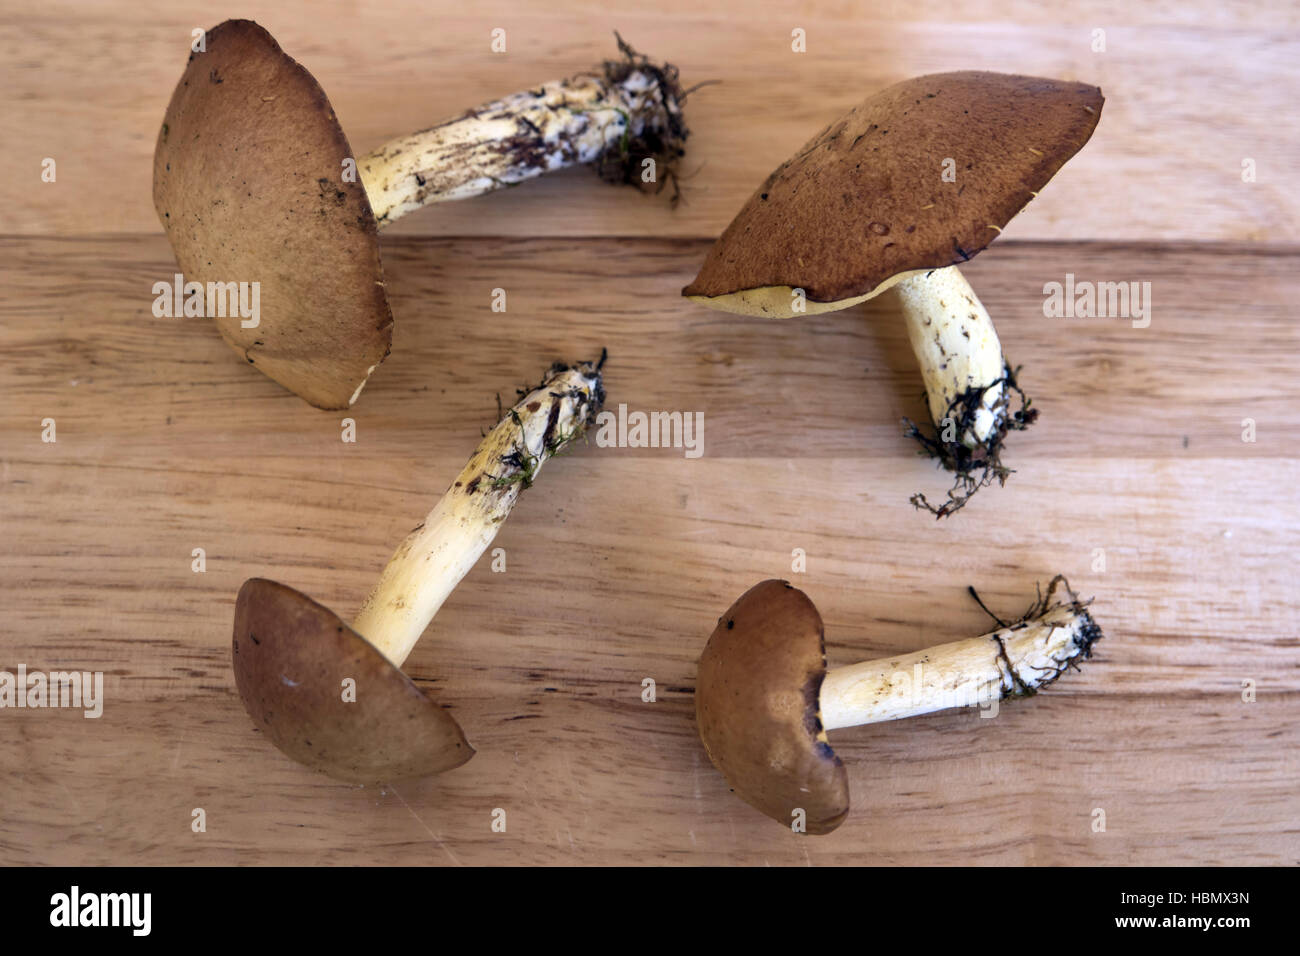 Les champignons sur une planche en bois Banque D'Images